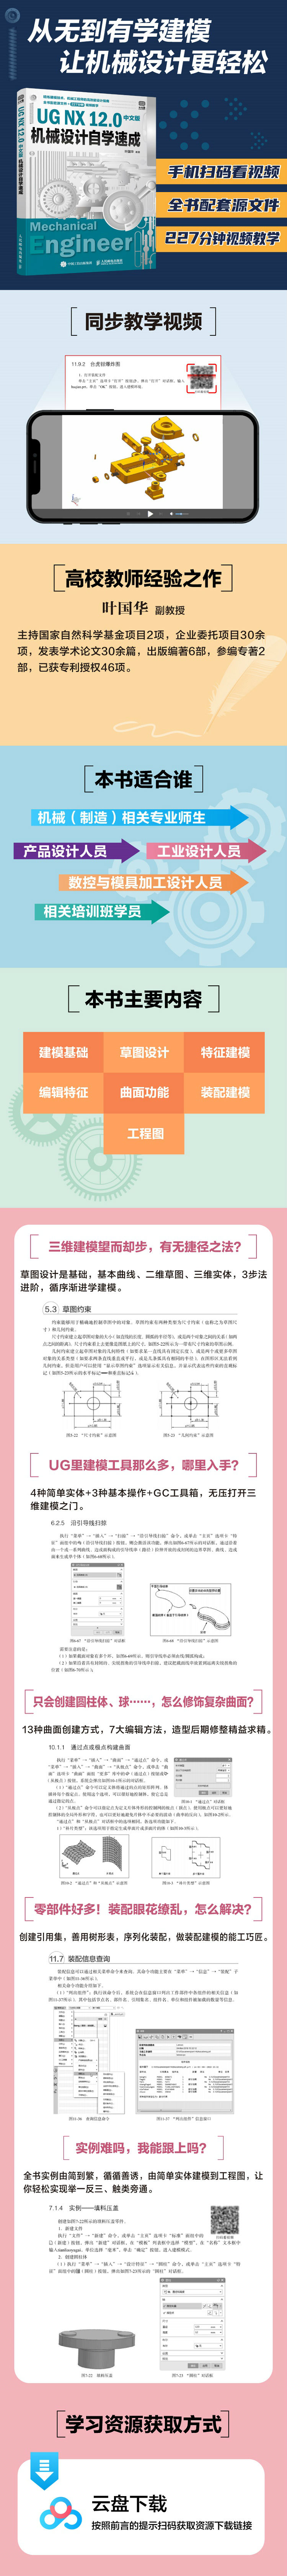 UG NX 12.0中文版机械设计自学速成